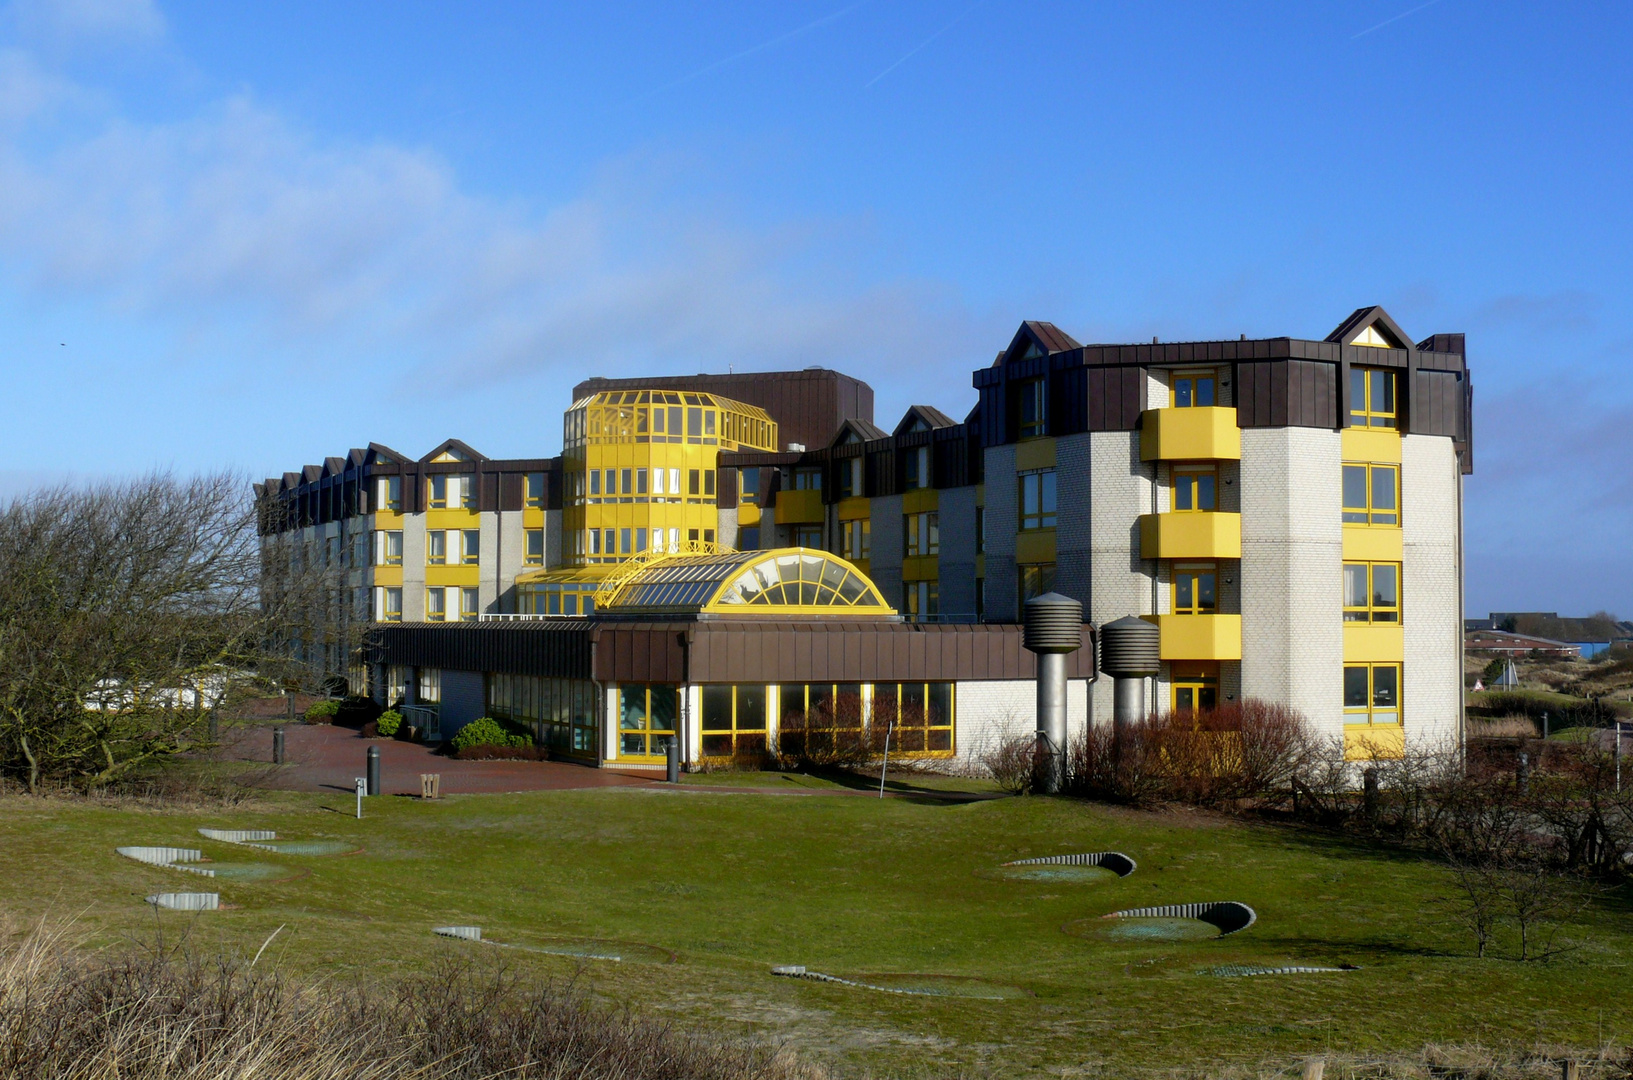 Borkum 2011 - Knappschafts-Klinik